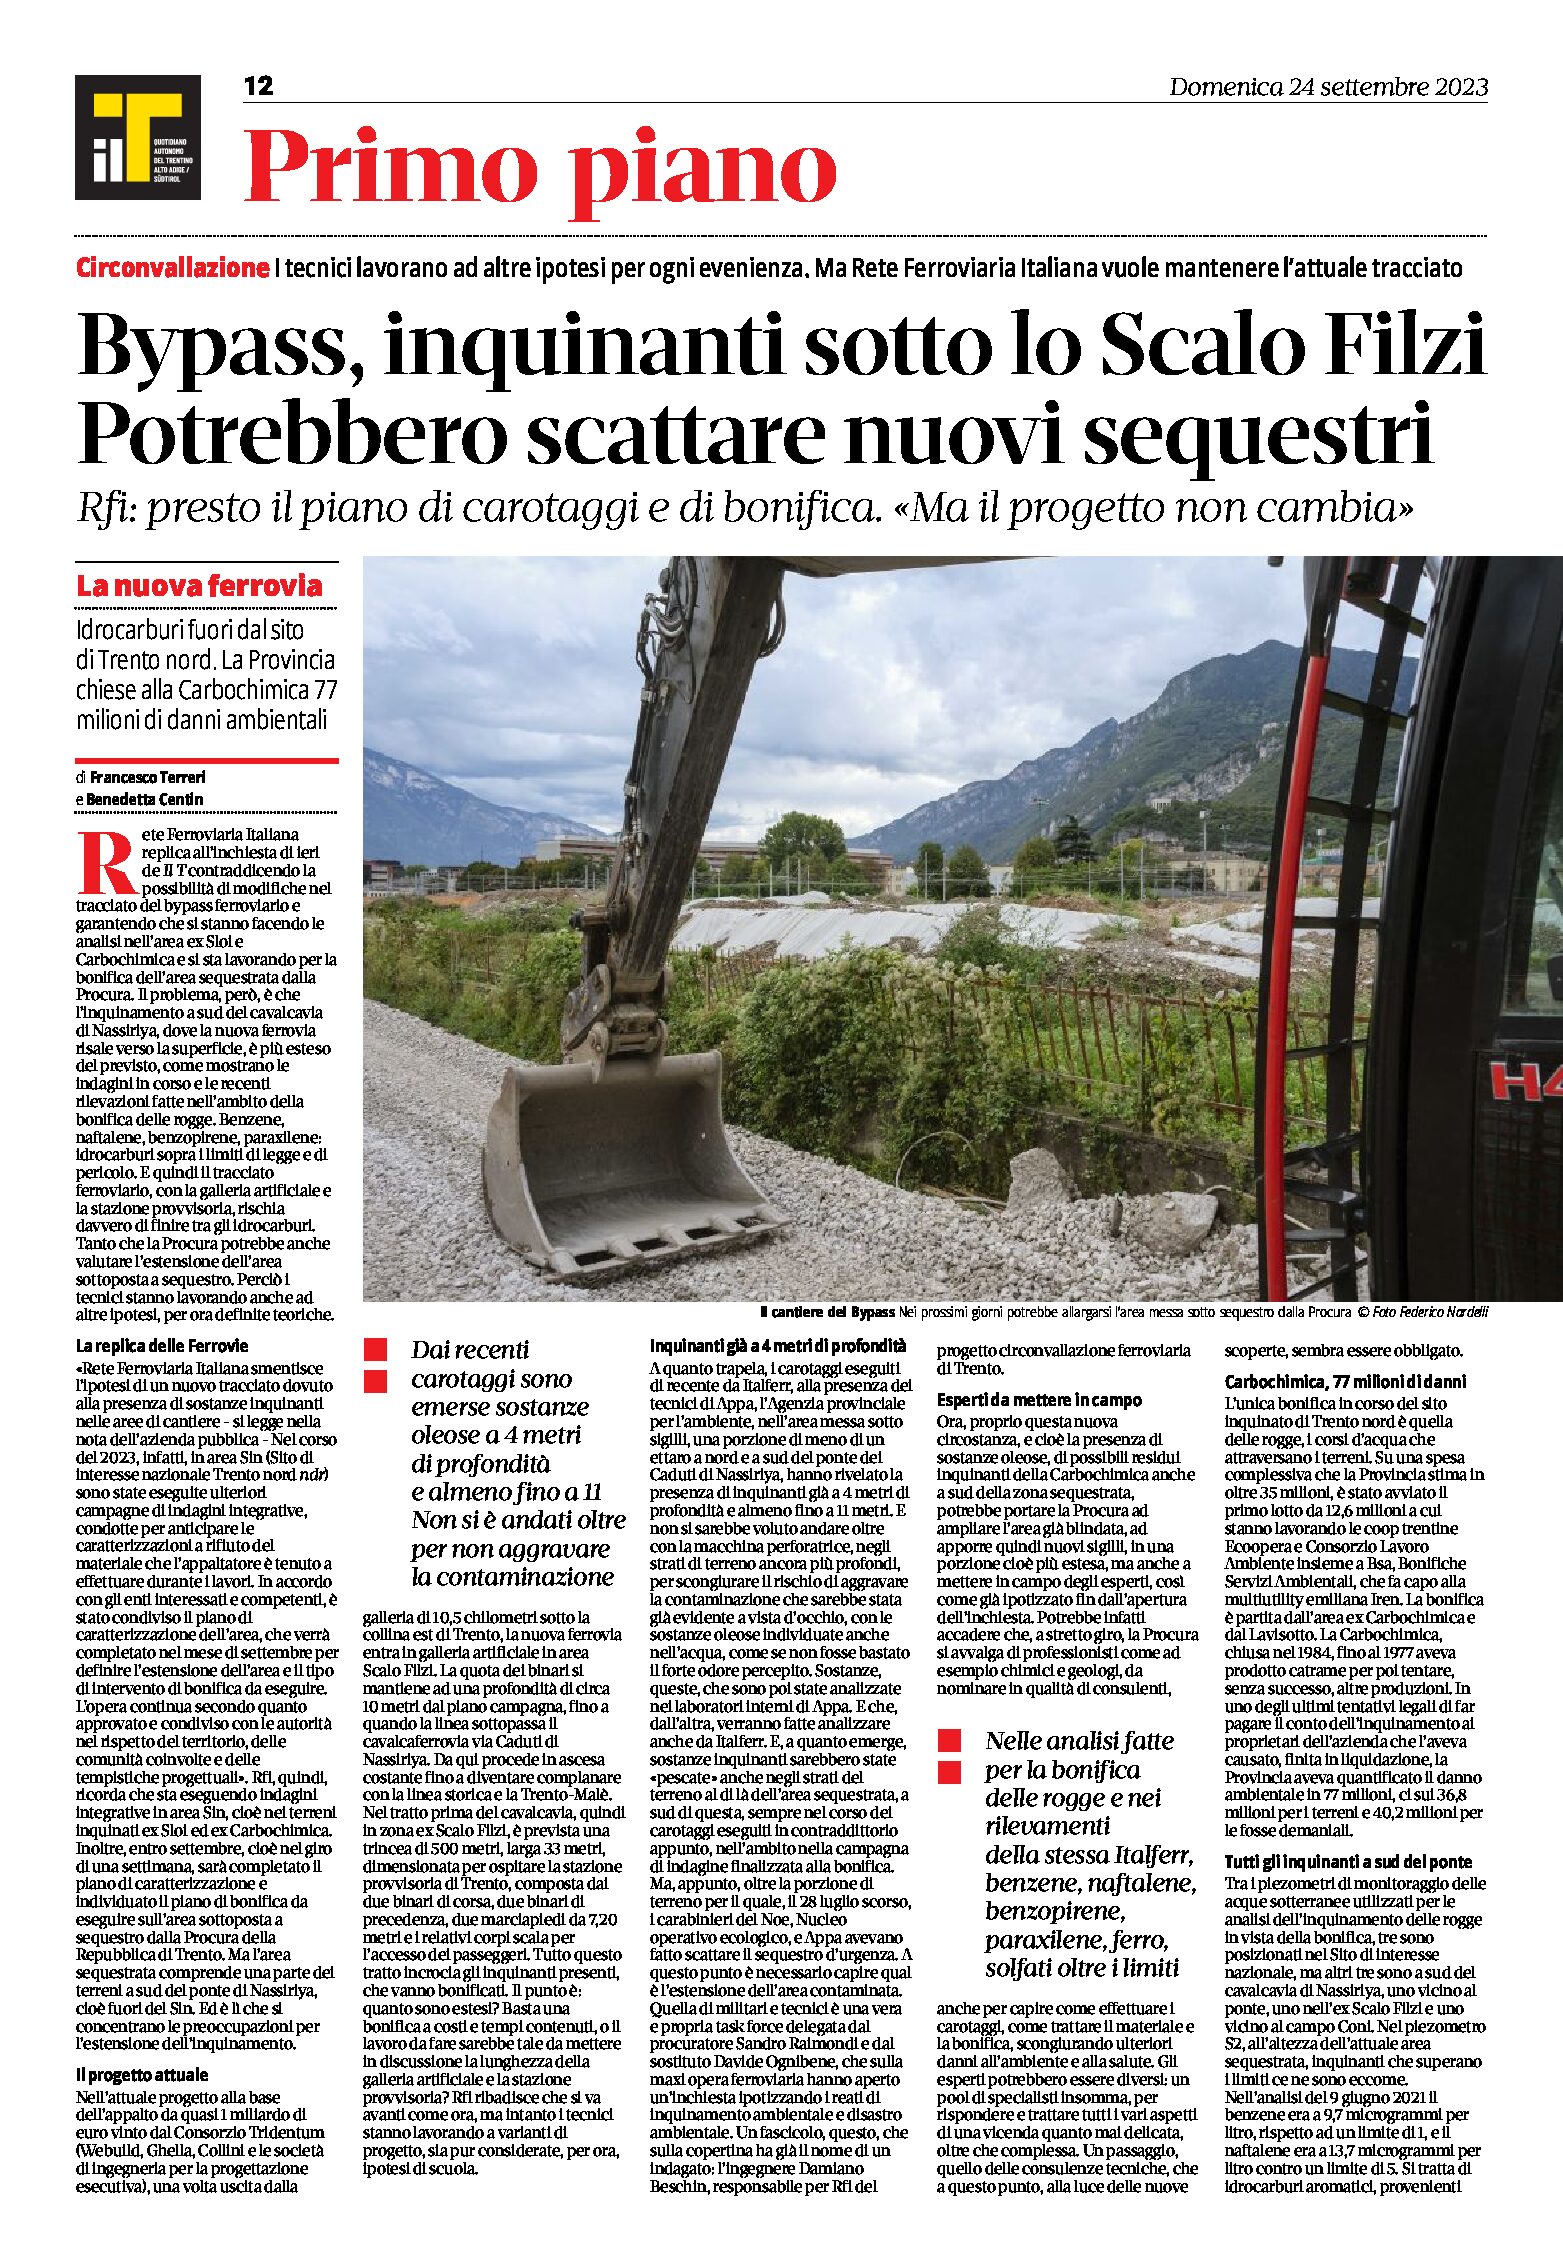 Trento, bypass: inquinanti sotto lo Scalo Filzi. Ianeselli “la stazione serve”